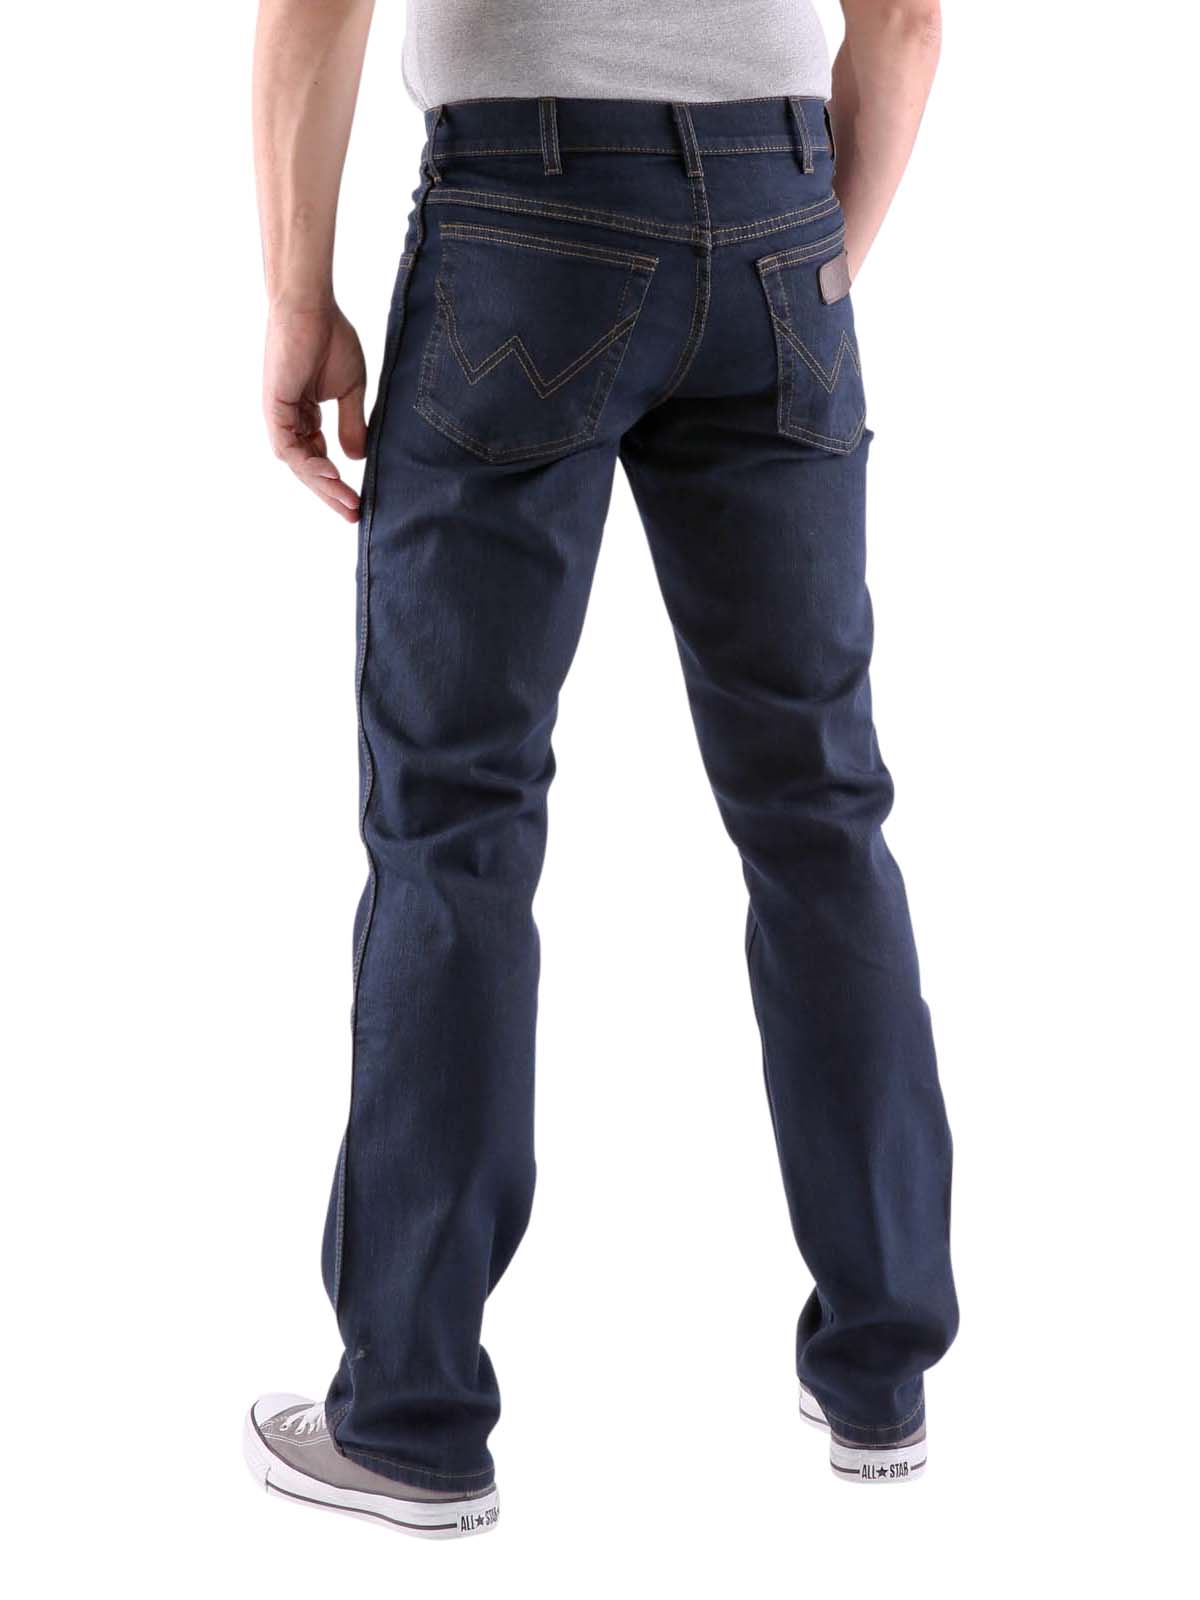 wrangler jeans texas stretch blue black